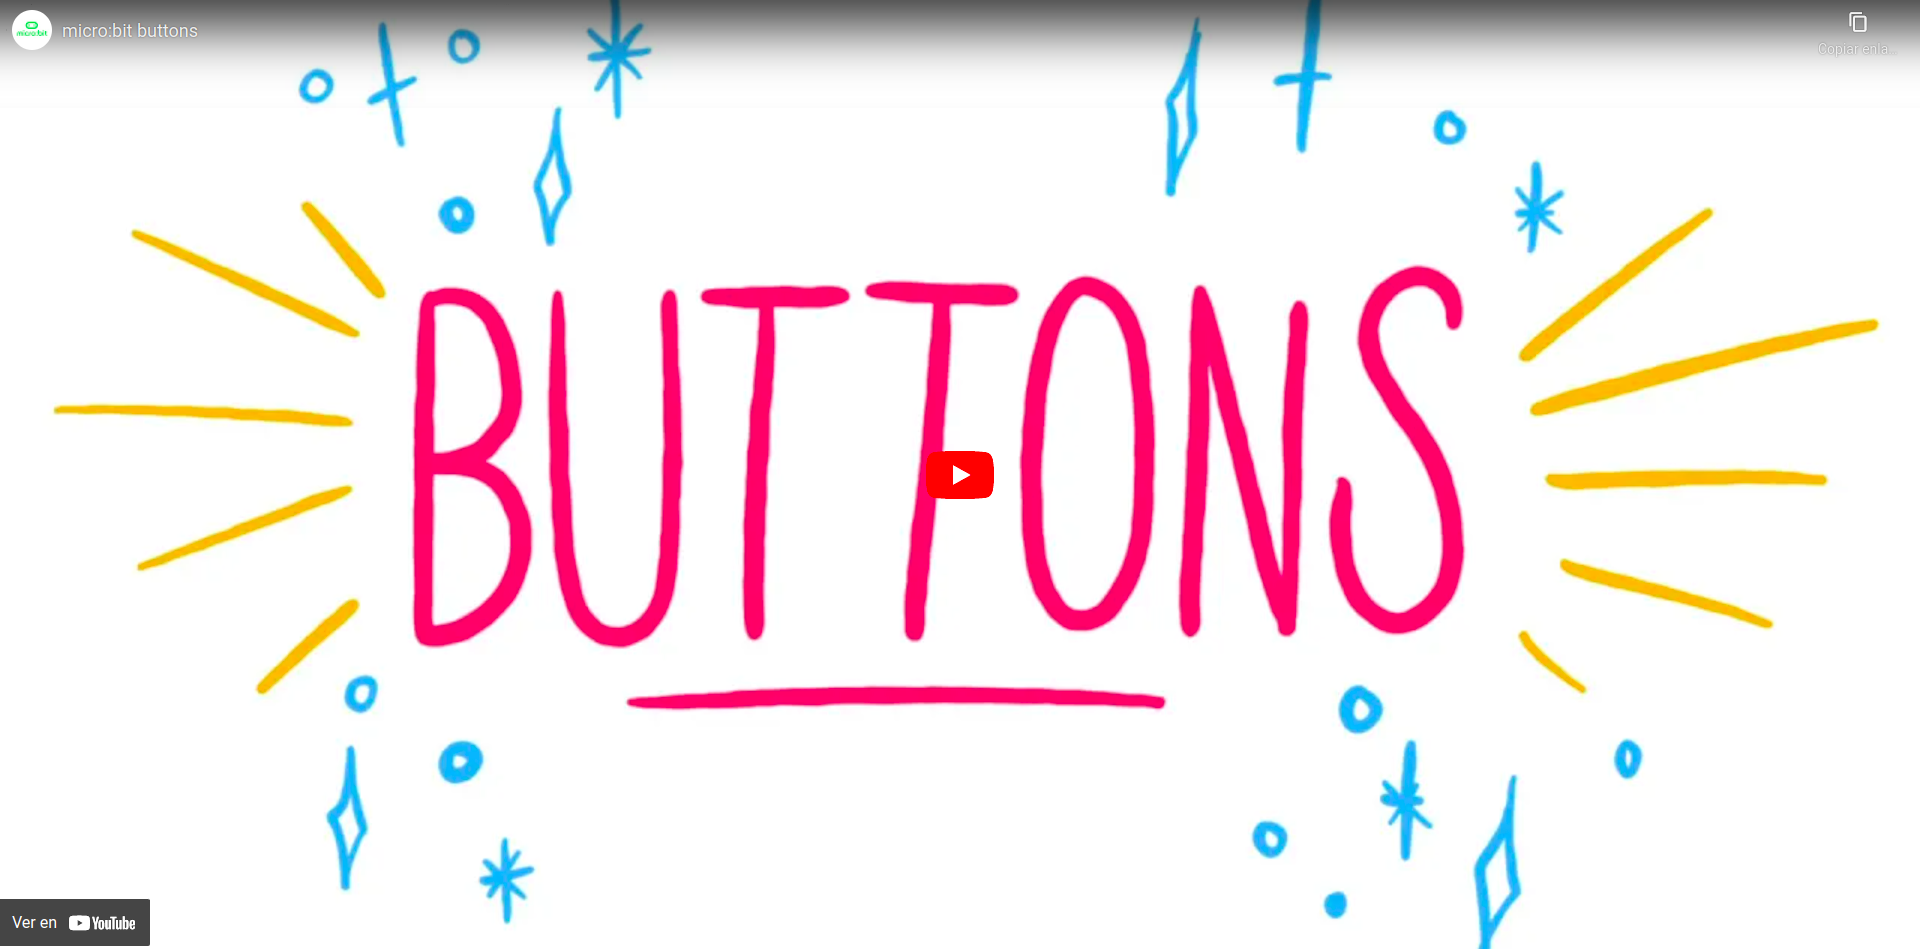 Vídeo que describe los botones de la placa micro:bit